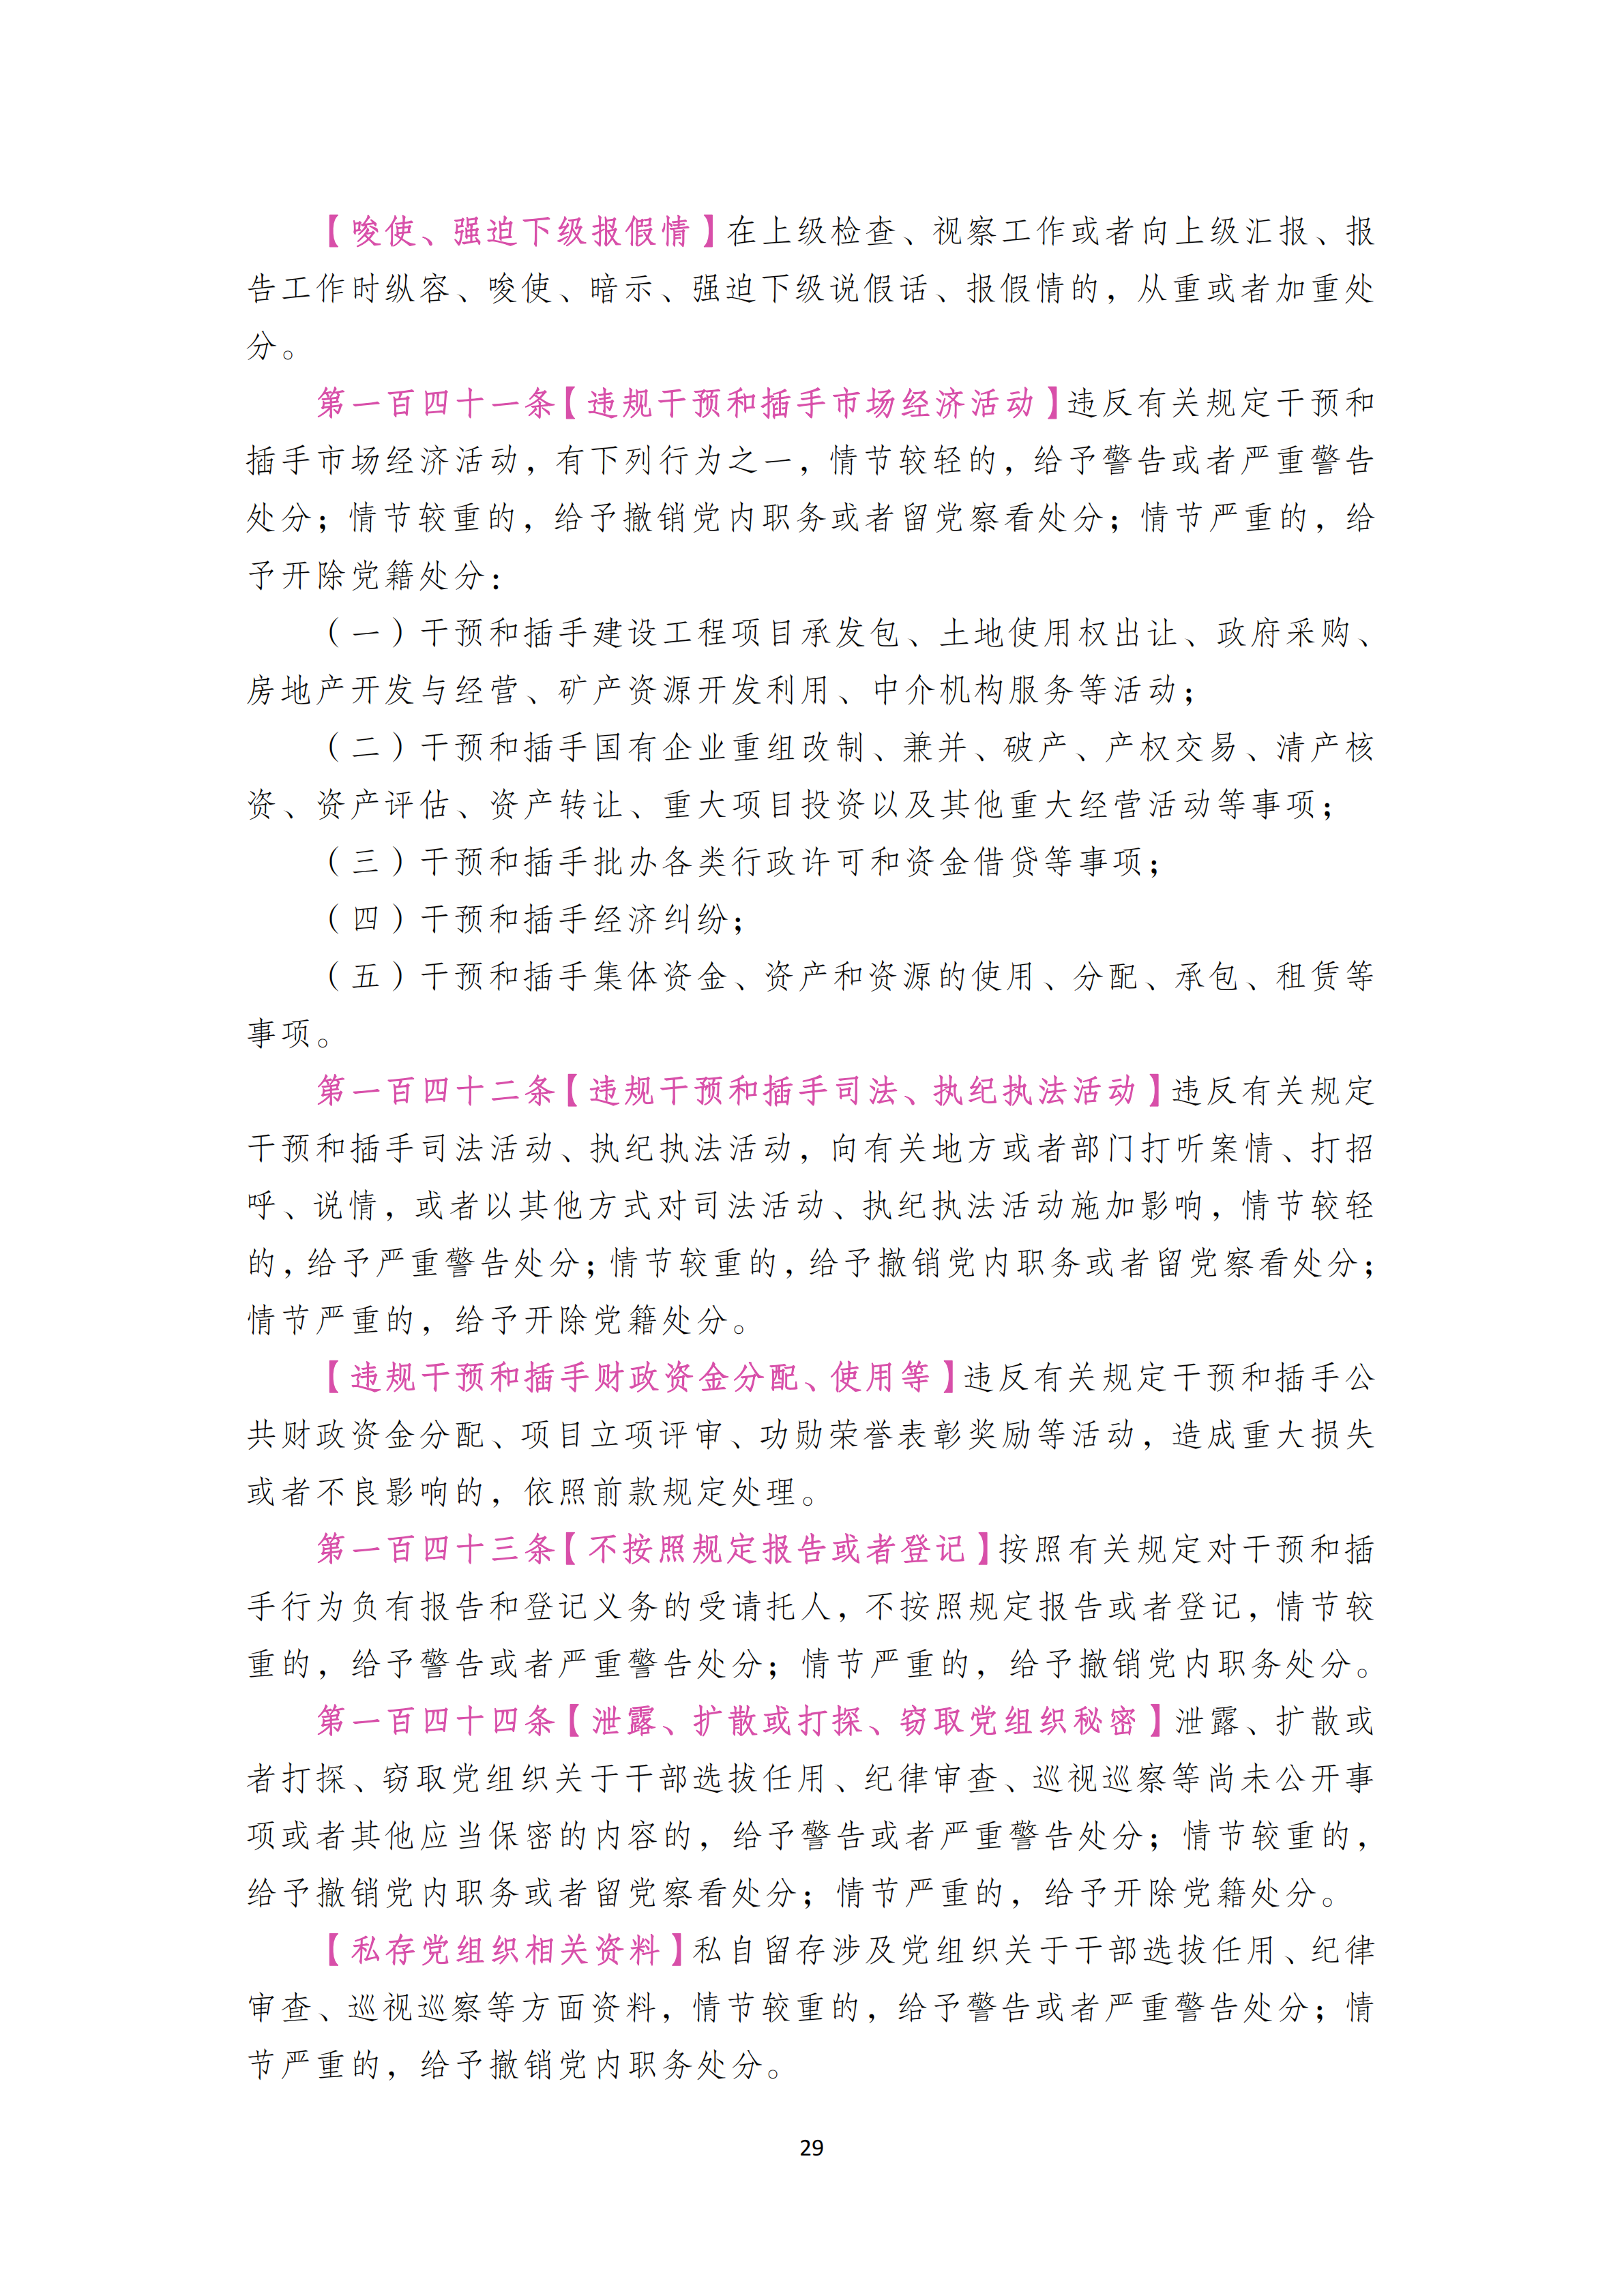 中国共产党纪律处分条例_28.png